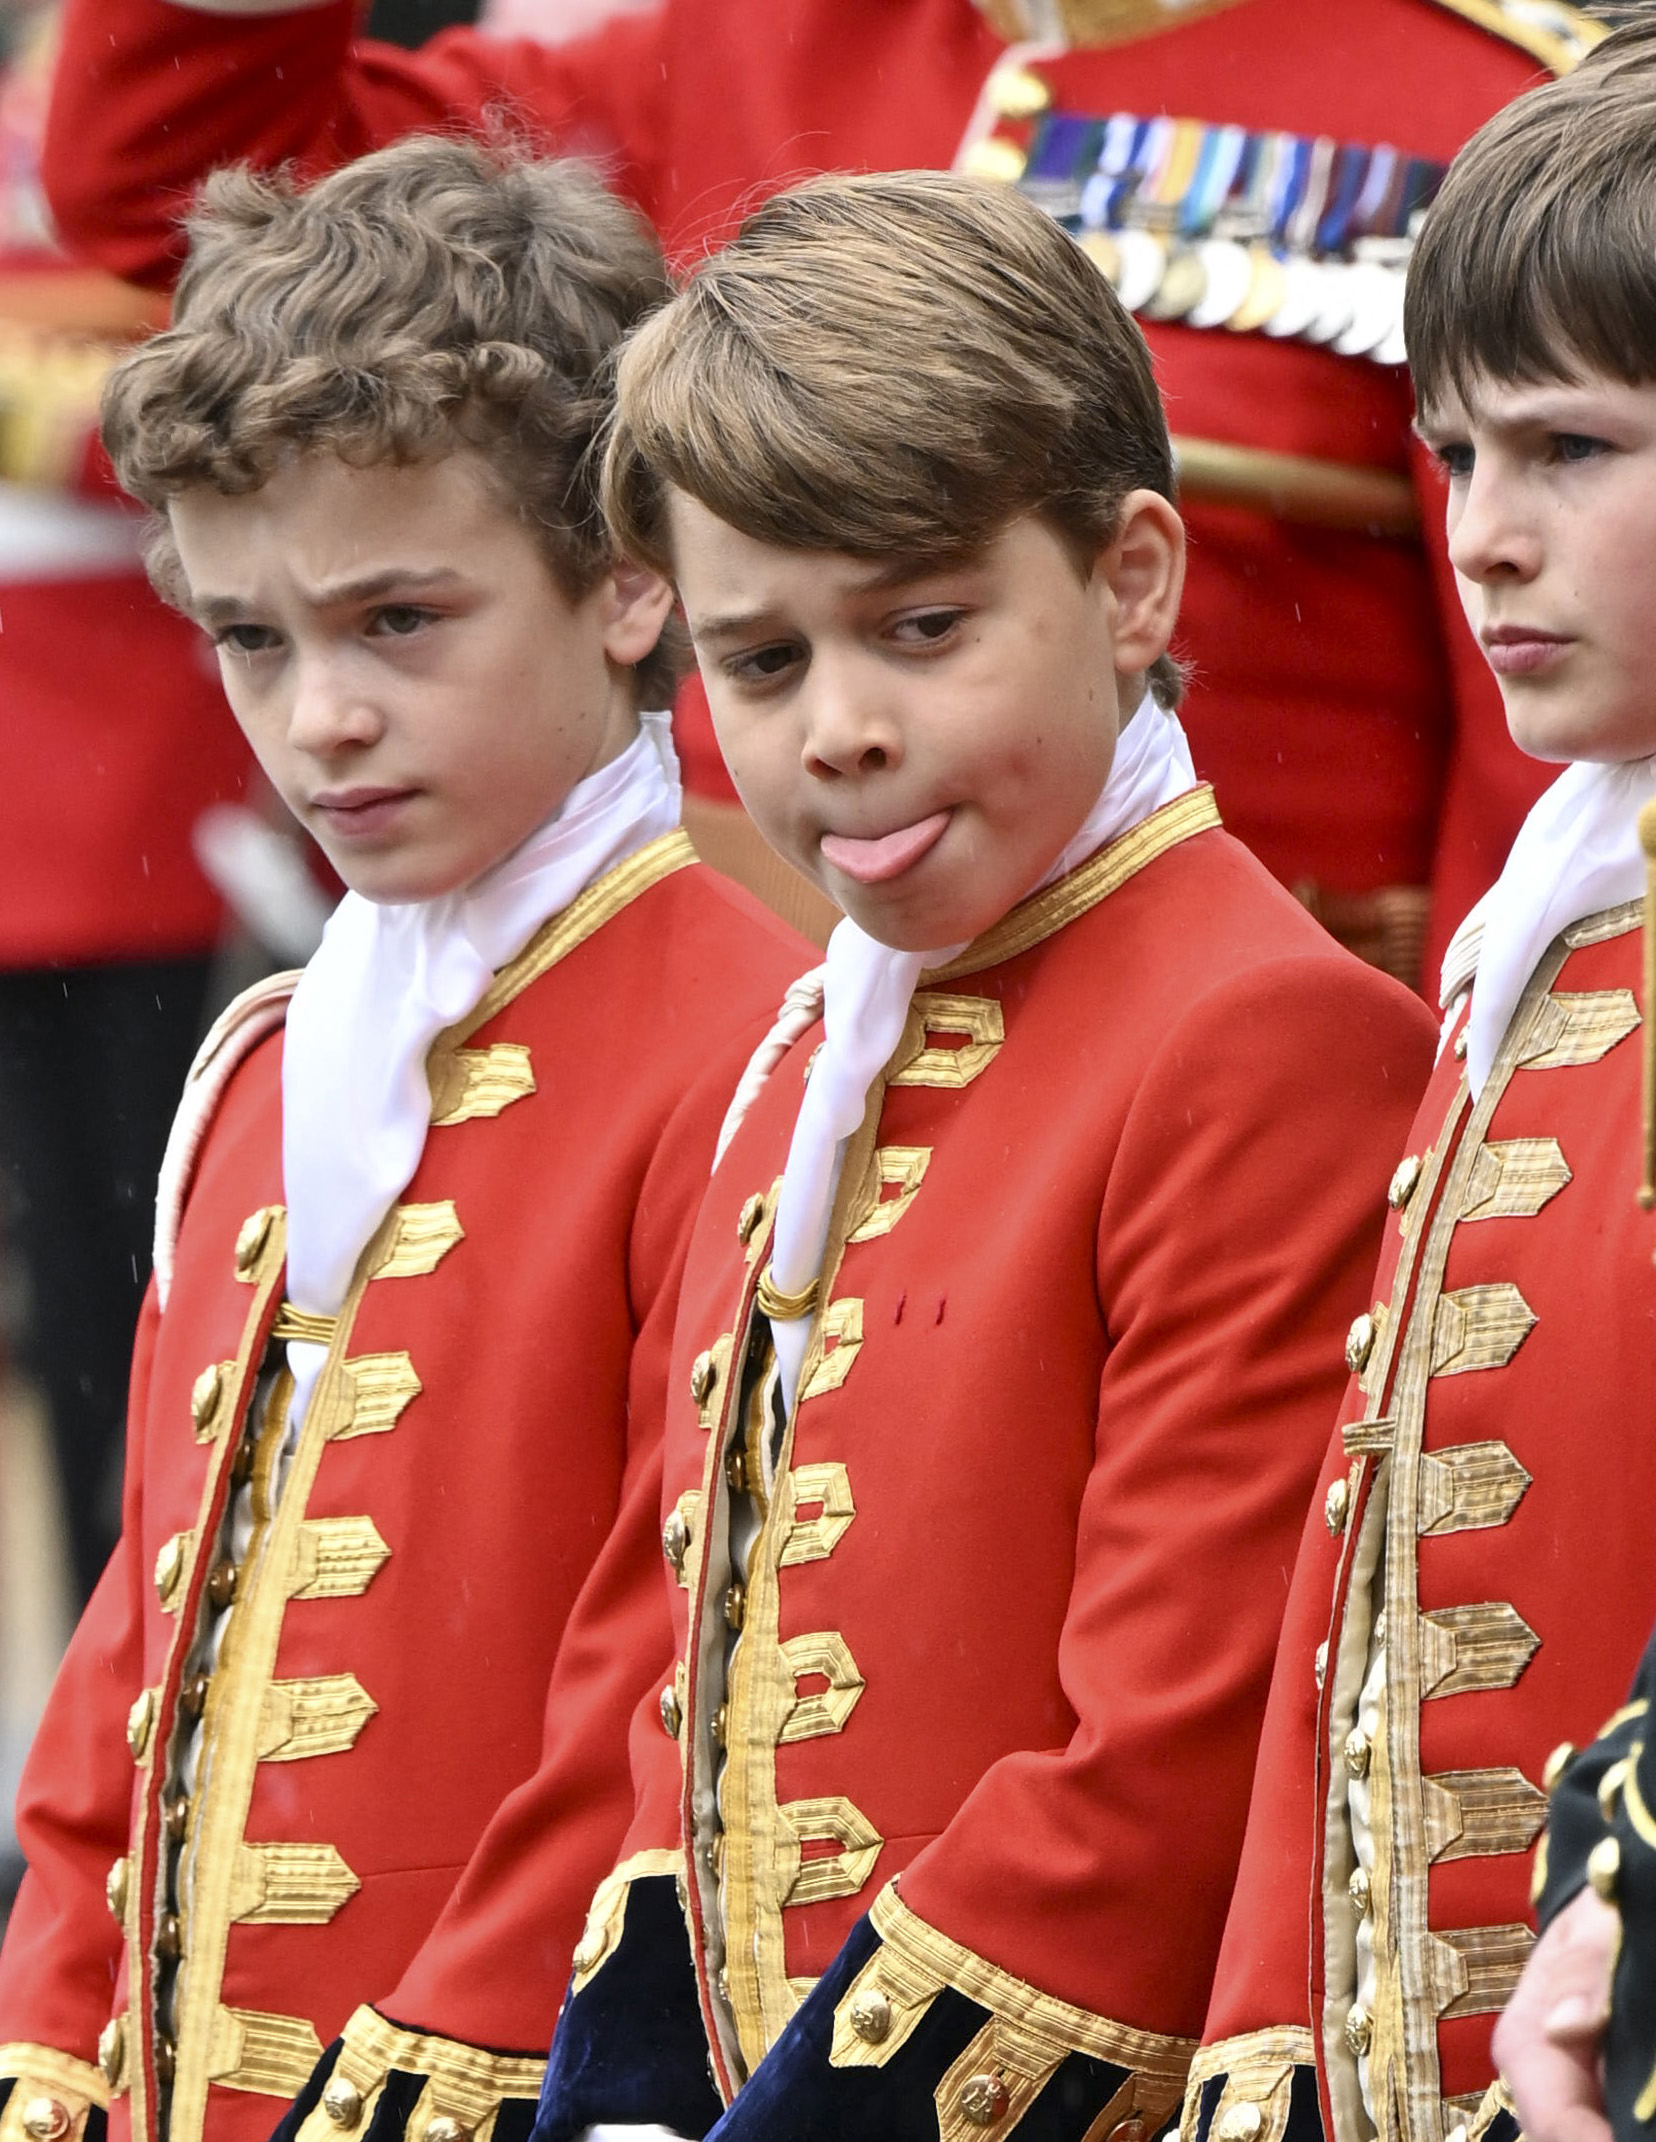 Ehrenpagen Ralph Tollemache, Prinz George von Wales und Lord Oliver Cholmondeley im Buckingham Palace während der Krönung von König Charles III. in London im Jahr 2023 | Quelle: Getty Images